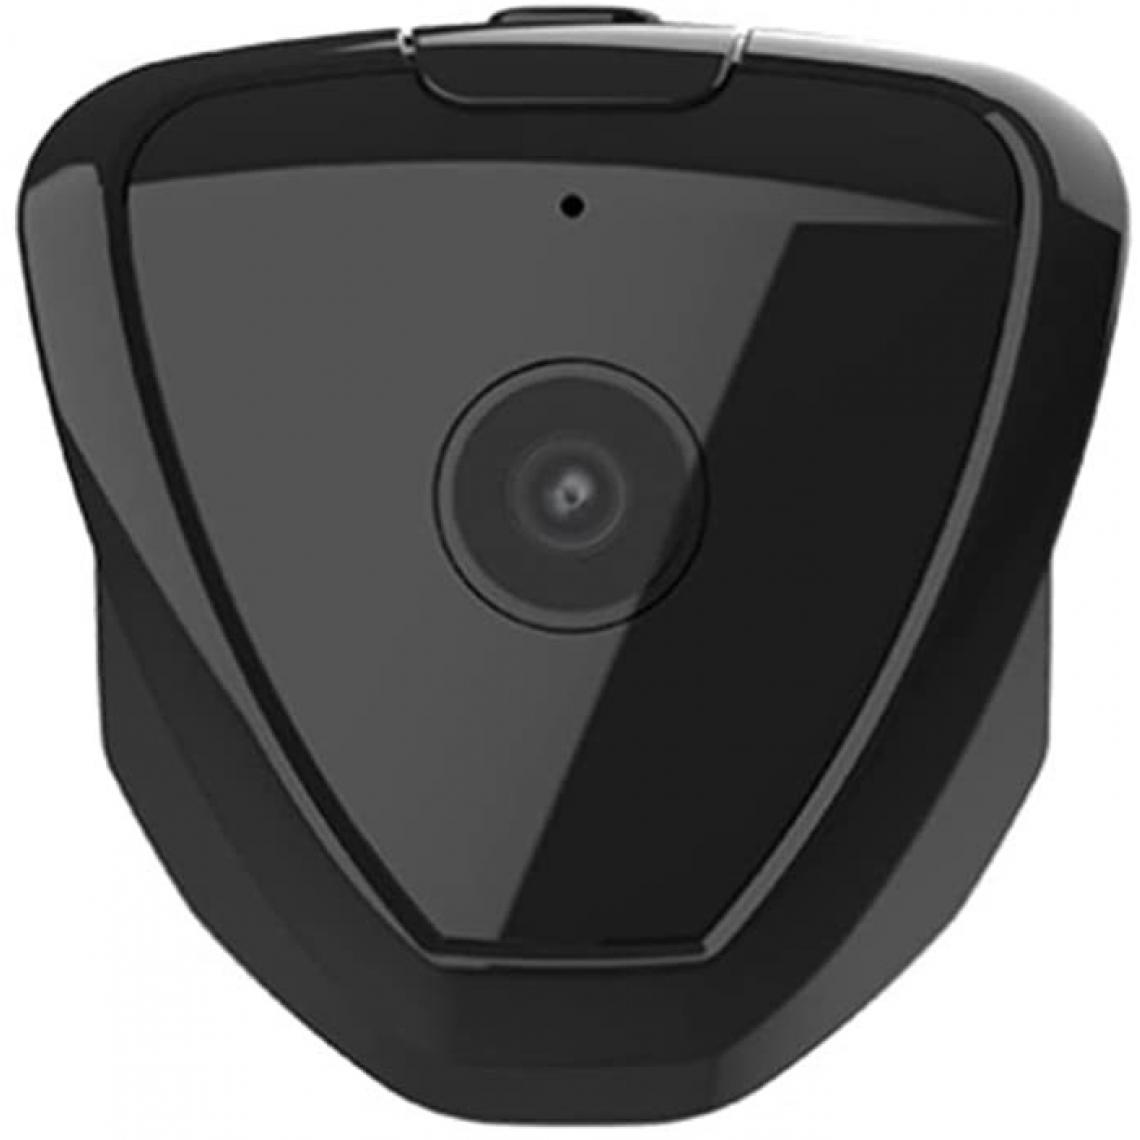 Chrono - Mini caméra, caméra de surveillance WiFi, petite caméra espion de sécurité familiale, caméra de vision nocturne intelligente, pas de lumière(Noir) - Autres accessoires smartphone